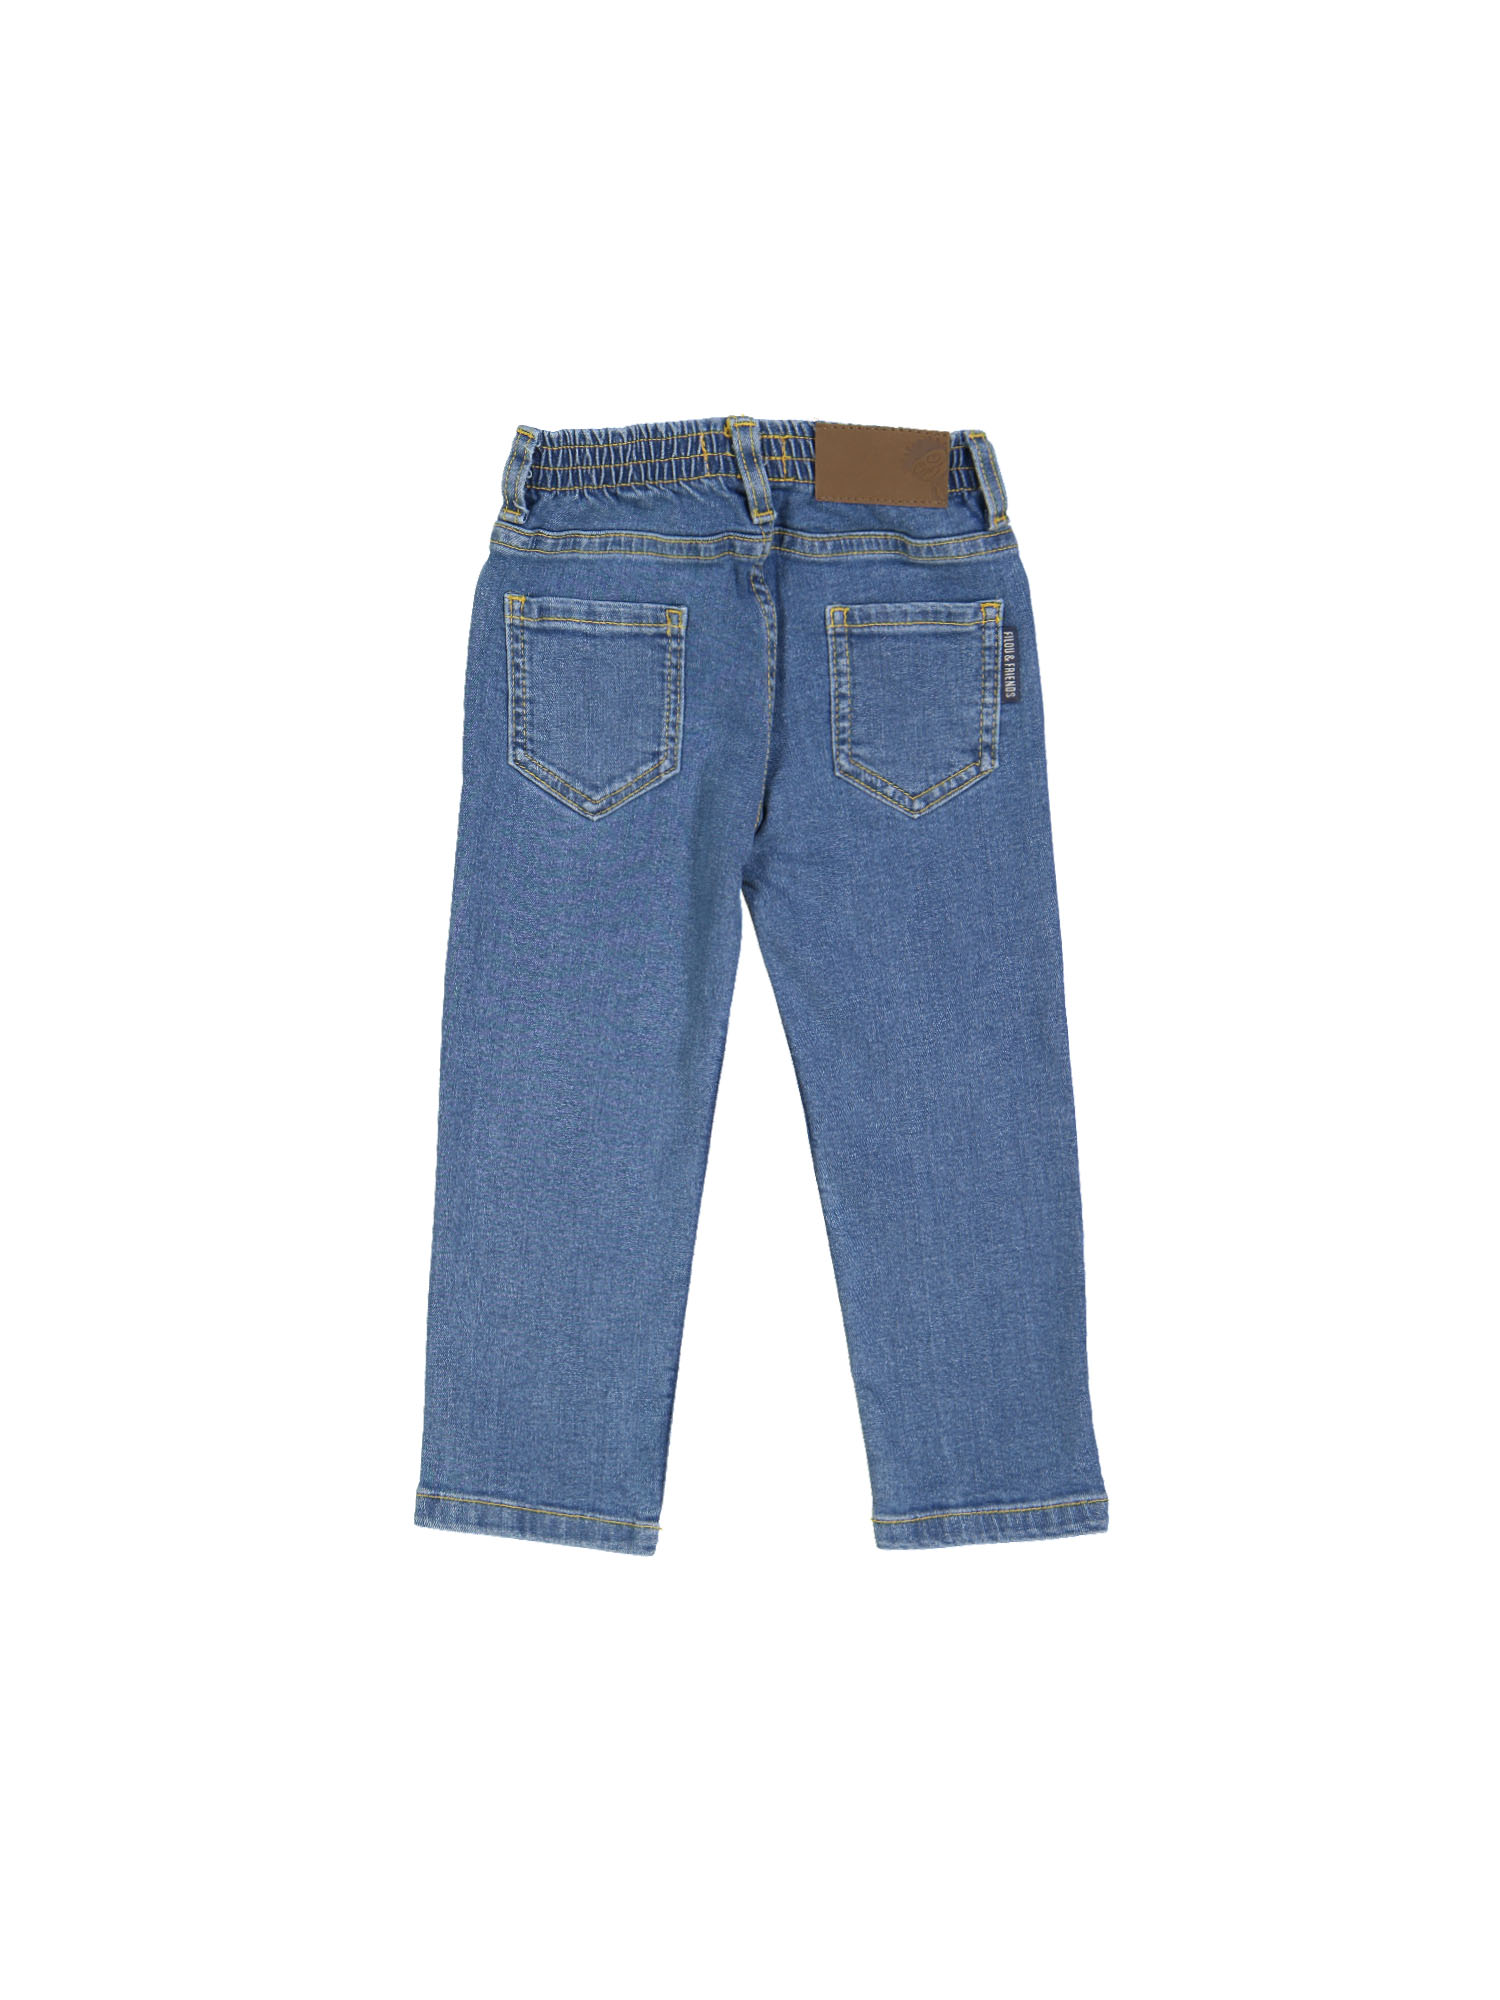 broek regular jeans bleach blauw 10j